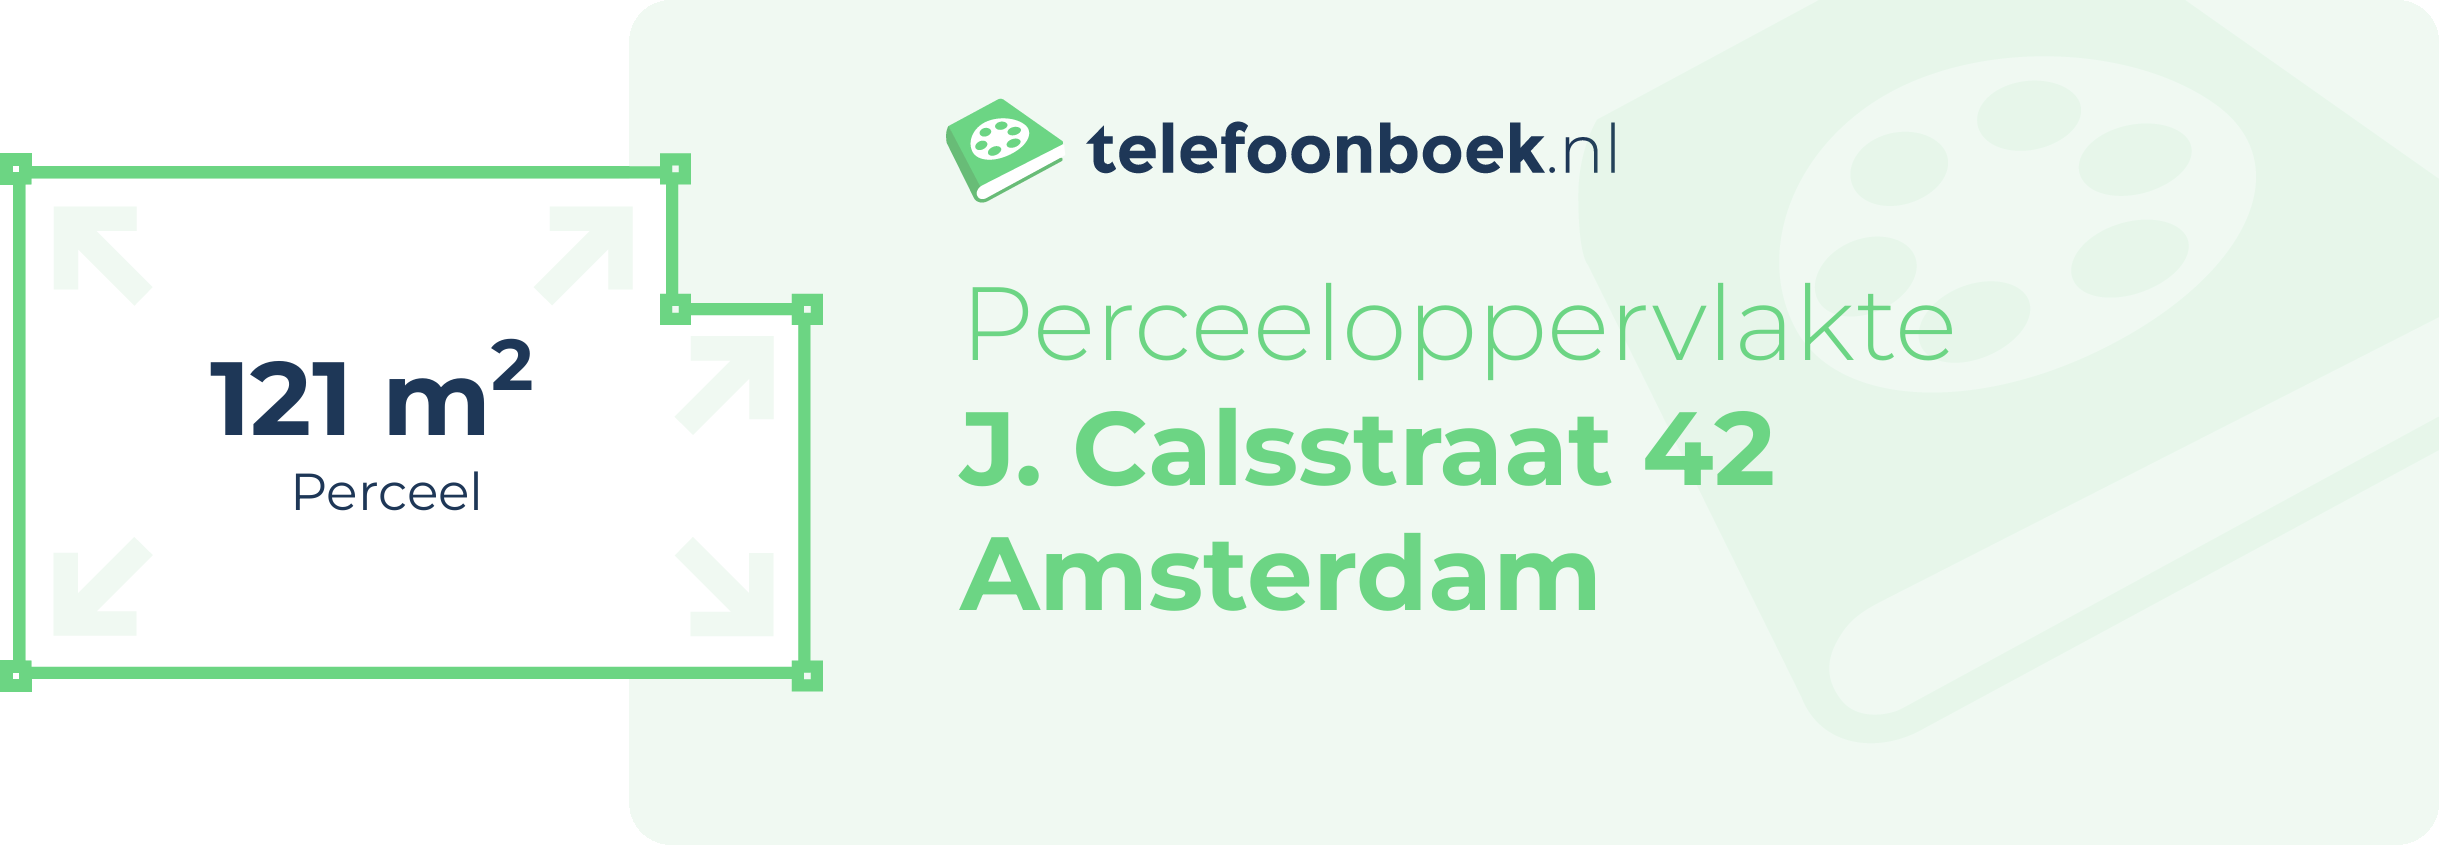 Perceeloppervlakte J. Calsstraat 42 Amsterdam